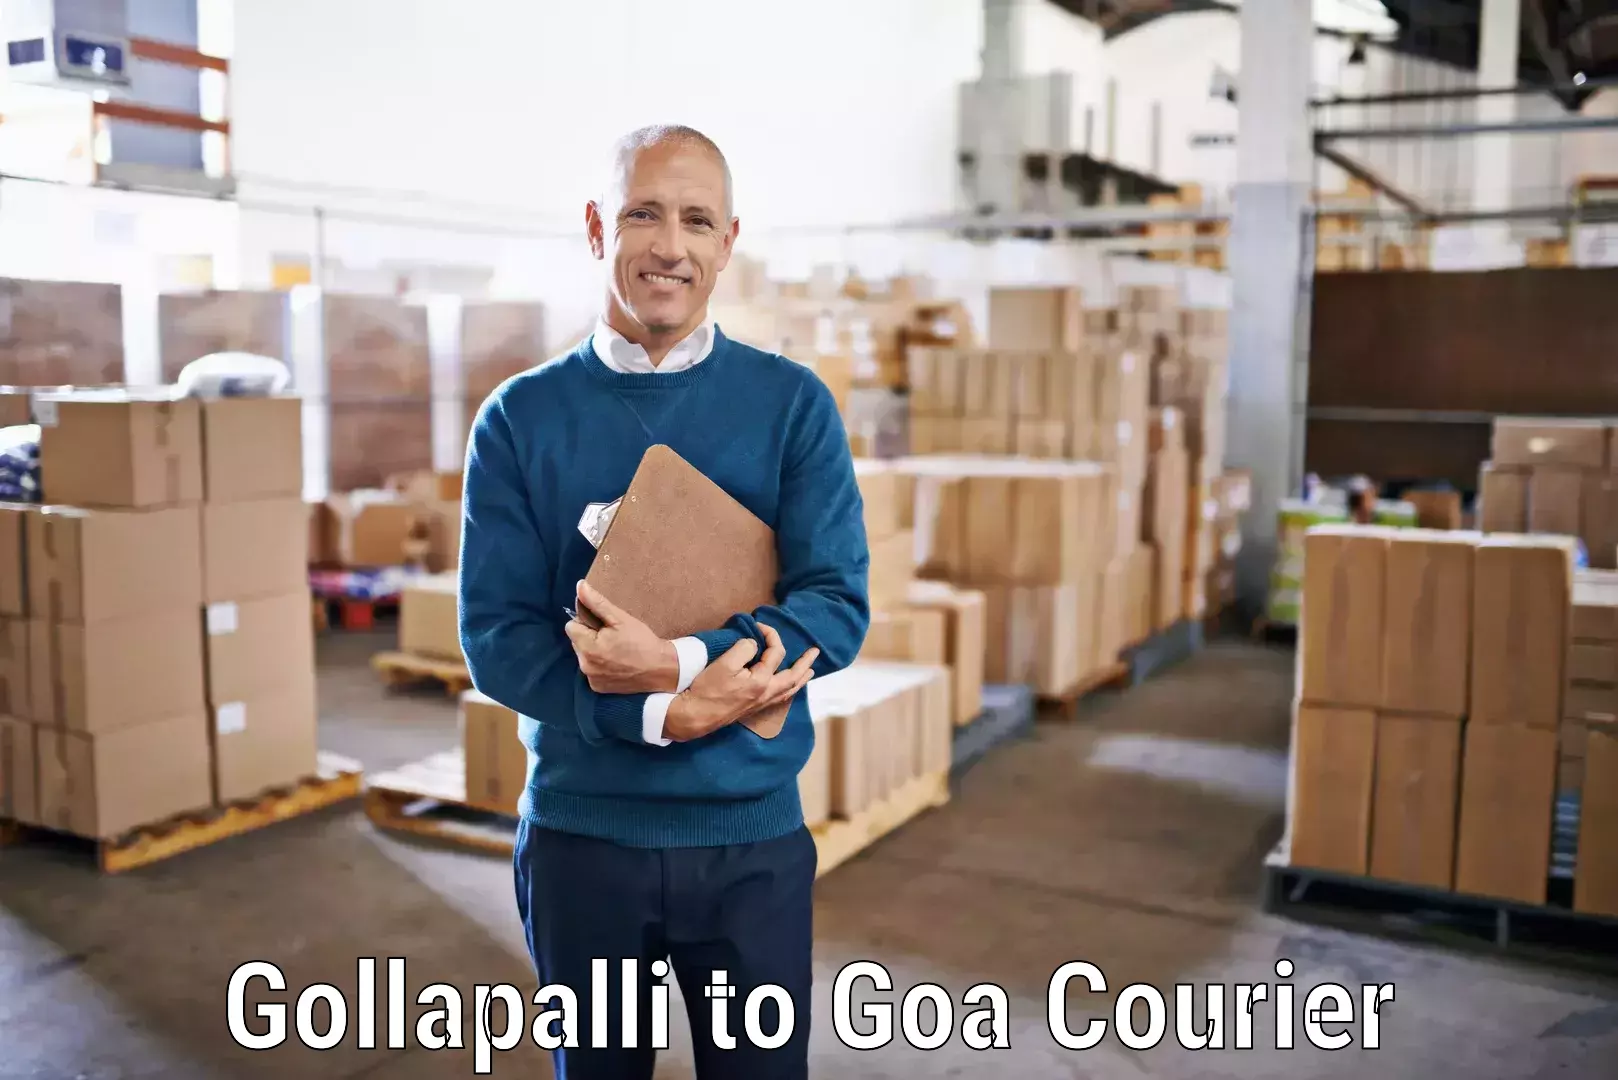 Efficient freight service Gollapalli to Goa